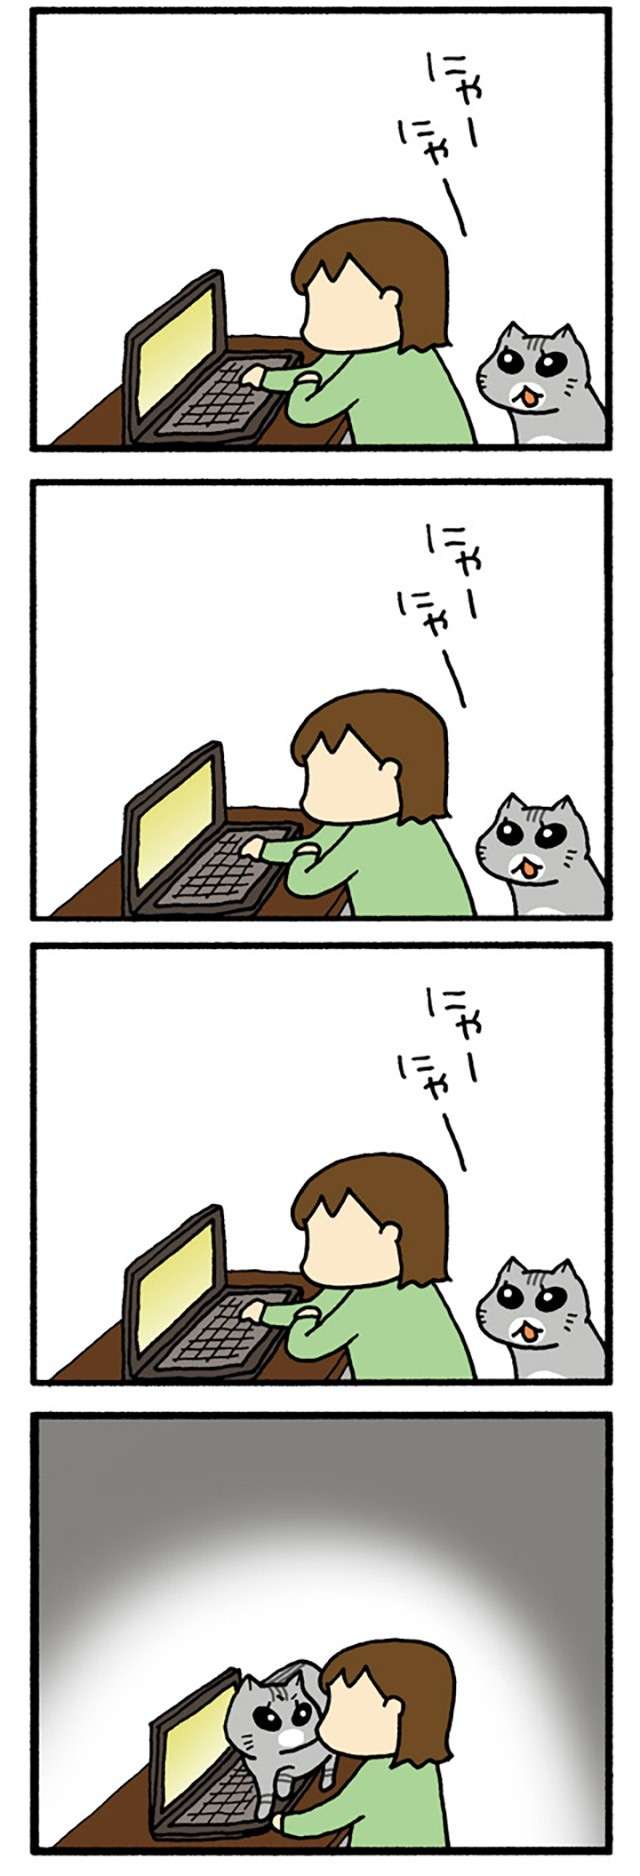 猫の自己主張が強い...！  パソコンに集中する飼い主の気を引くため、猫がとった行動は？／うちの3ねこ uchinosanneko3_030_2.jpg